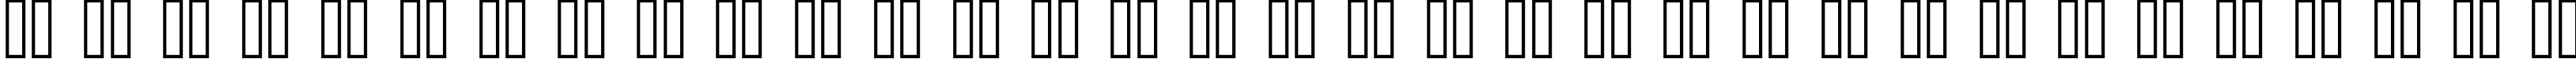 Пример написания русского алфавита шрифтом kroeger 06_65